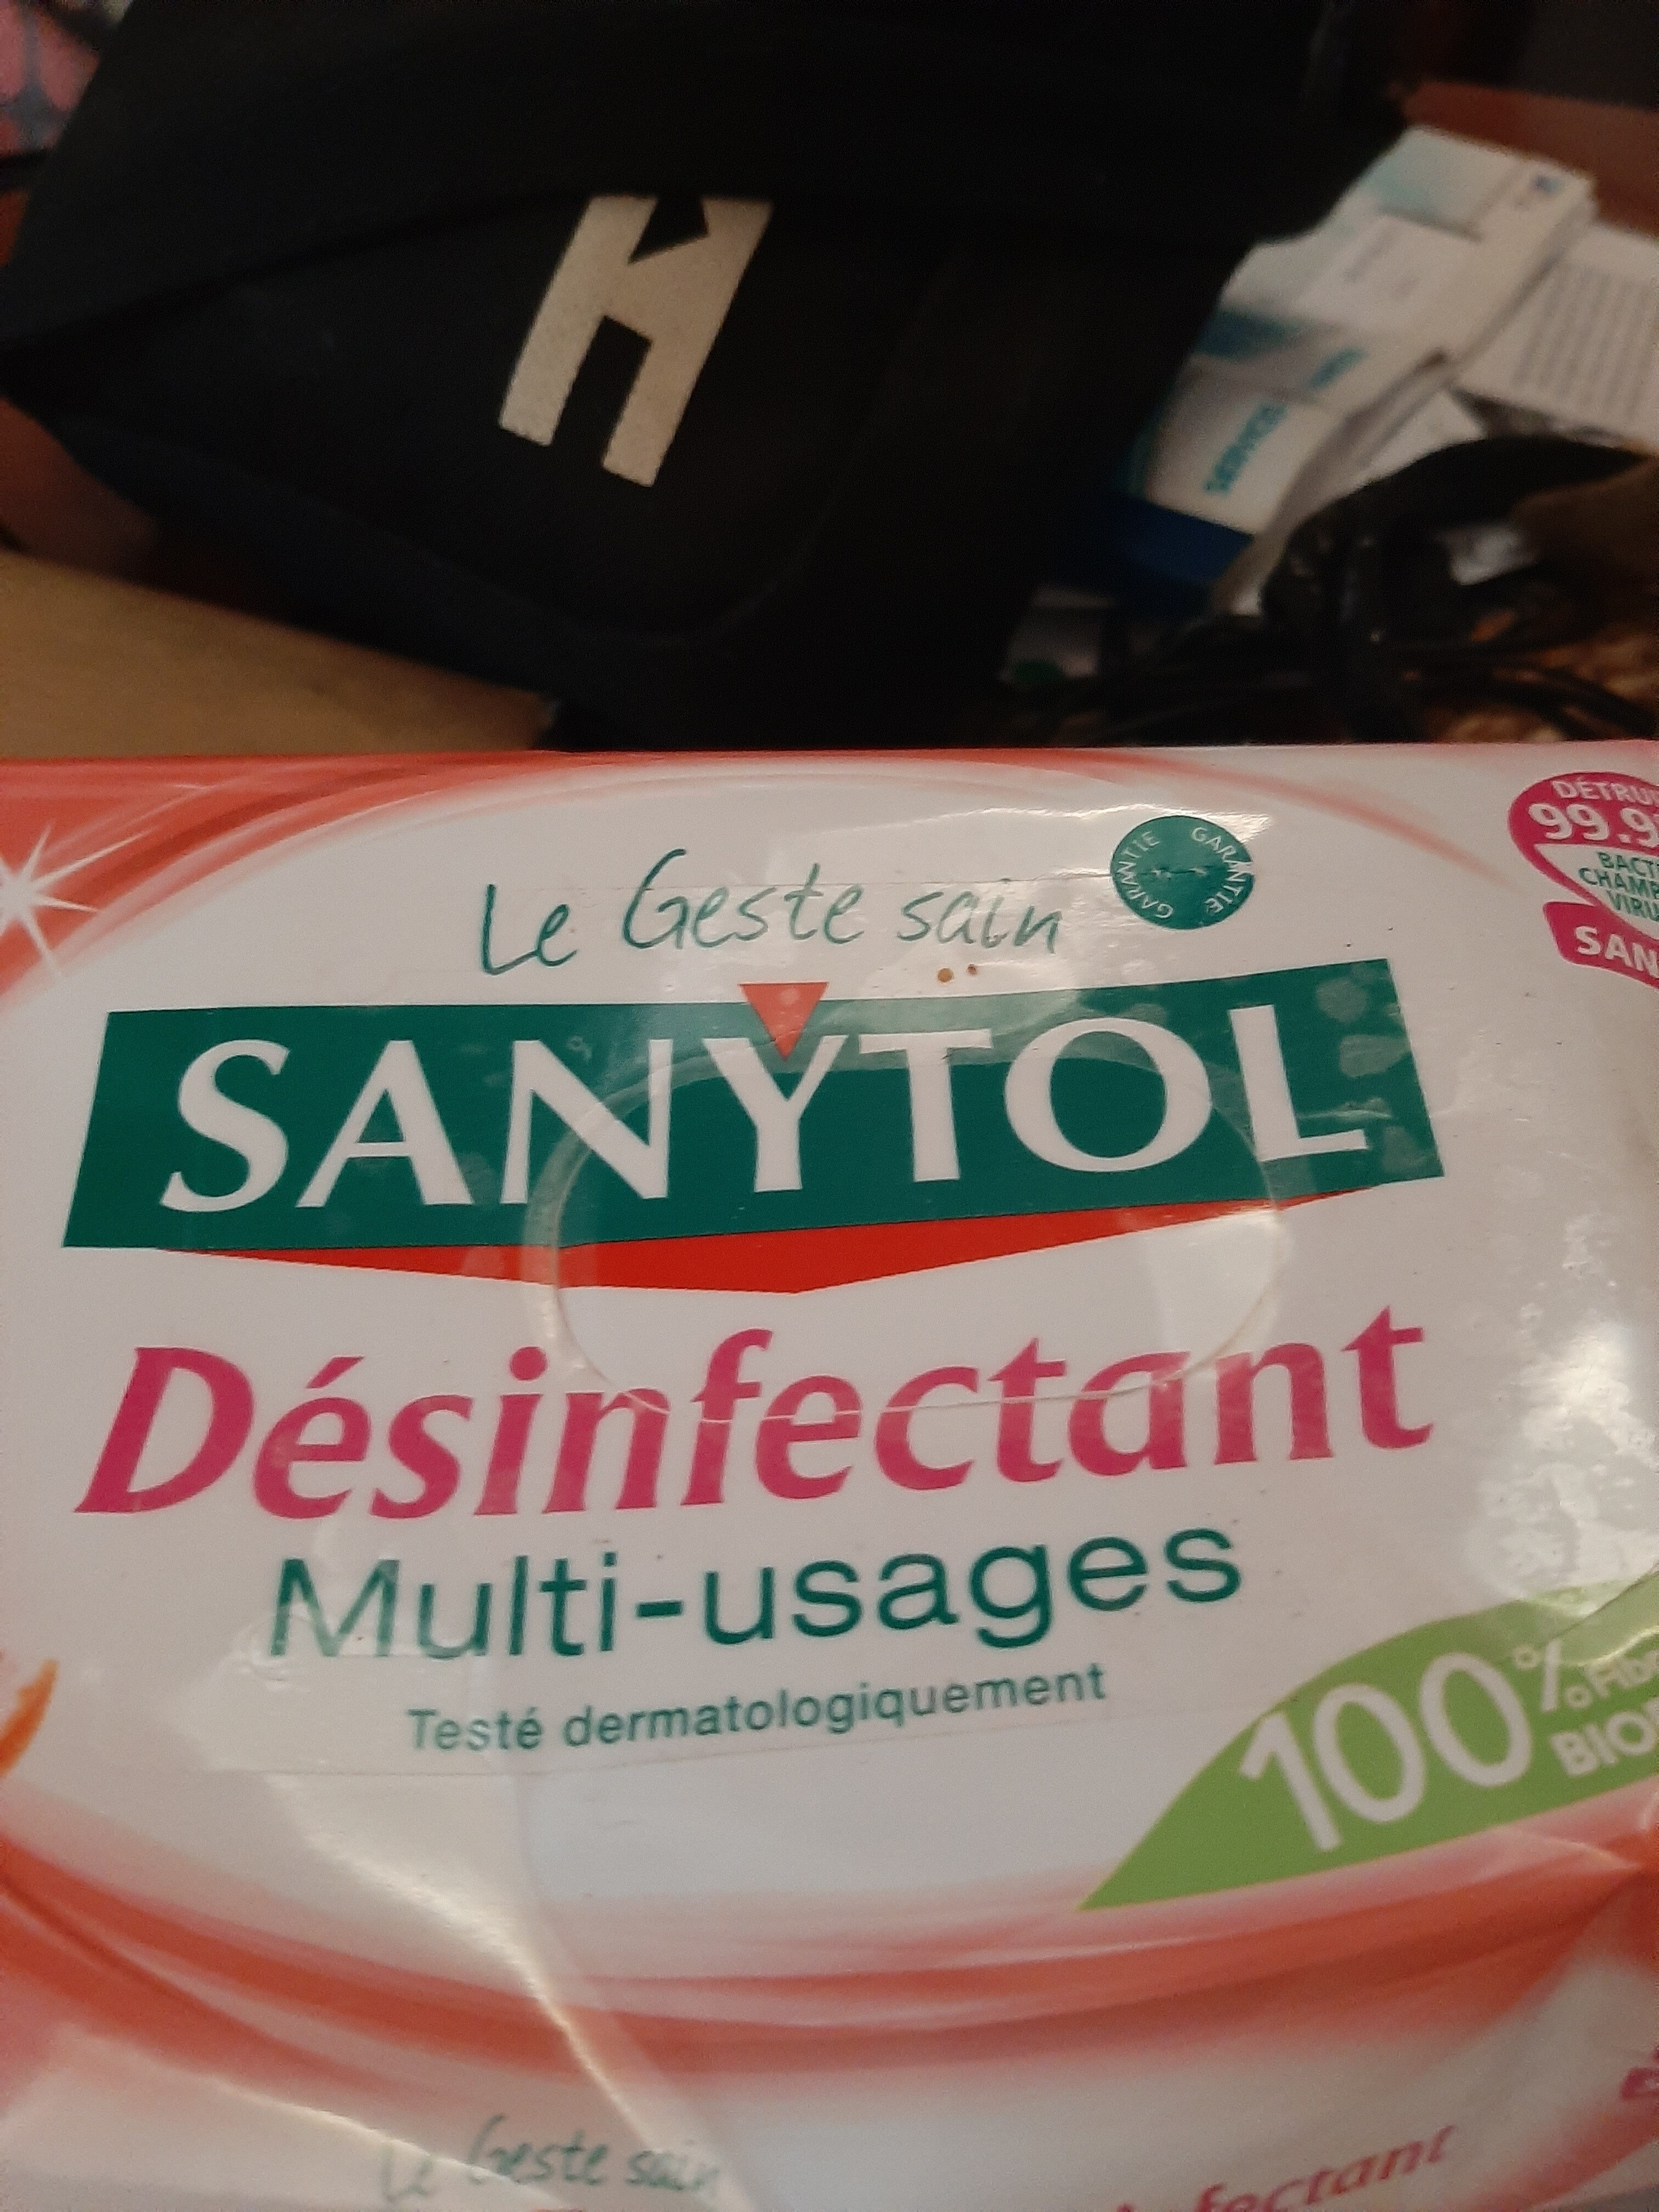 Lingette desinfectant - Product - fr